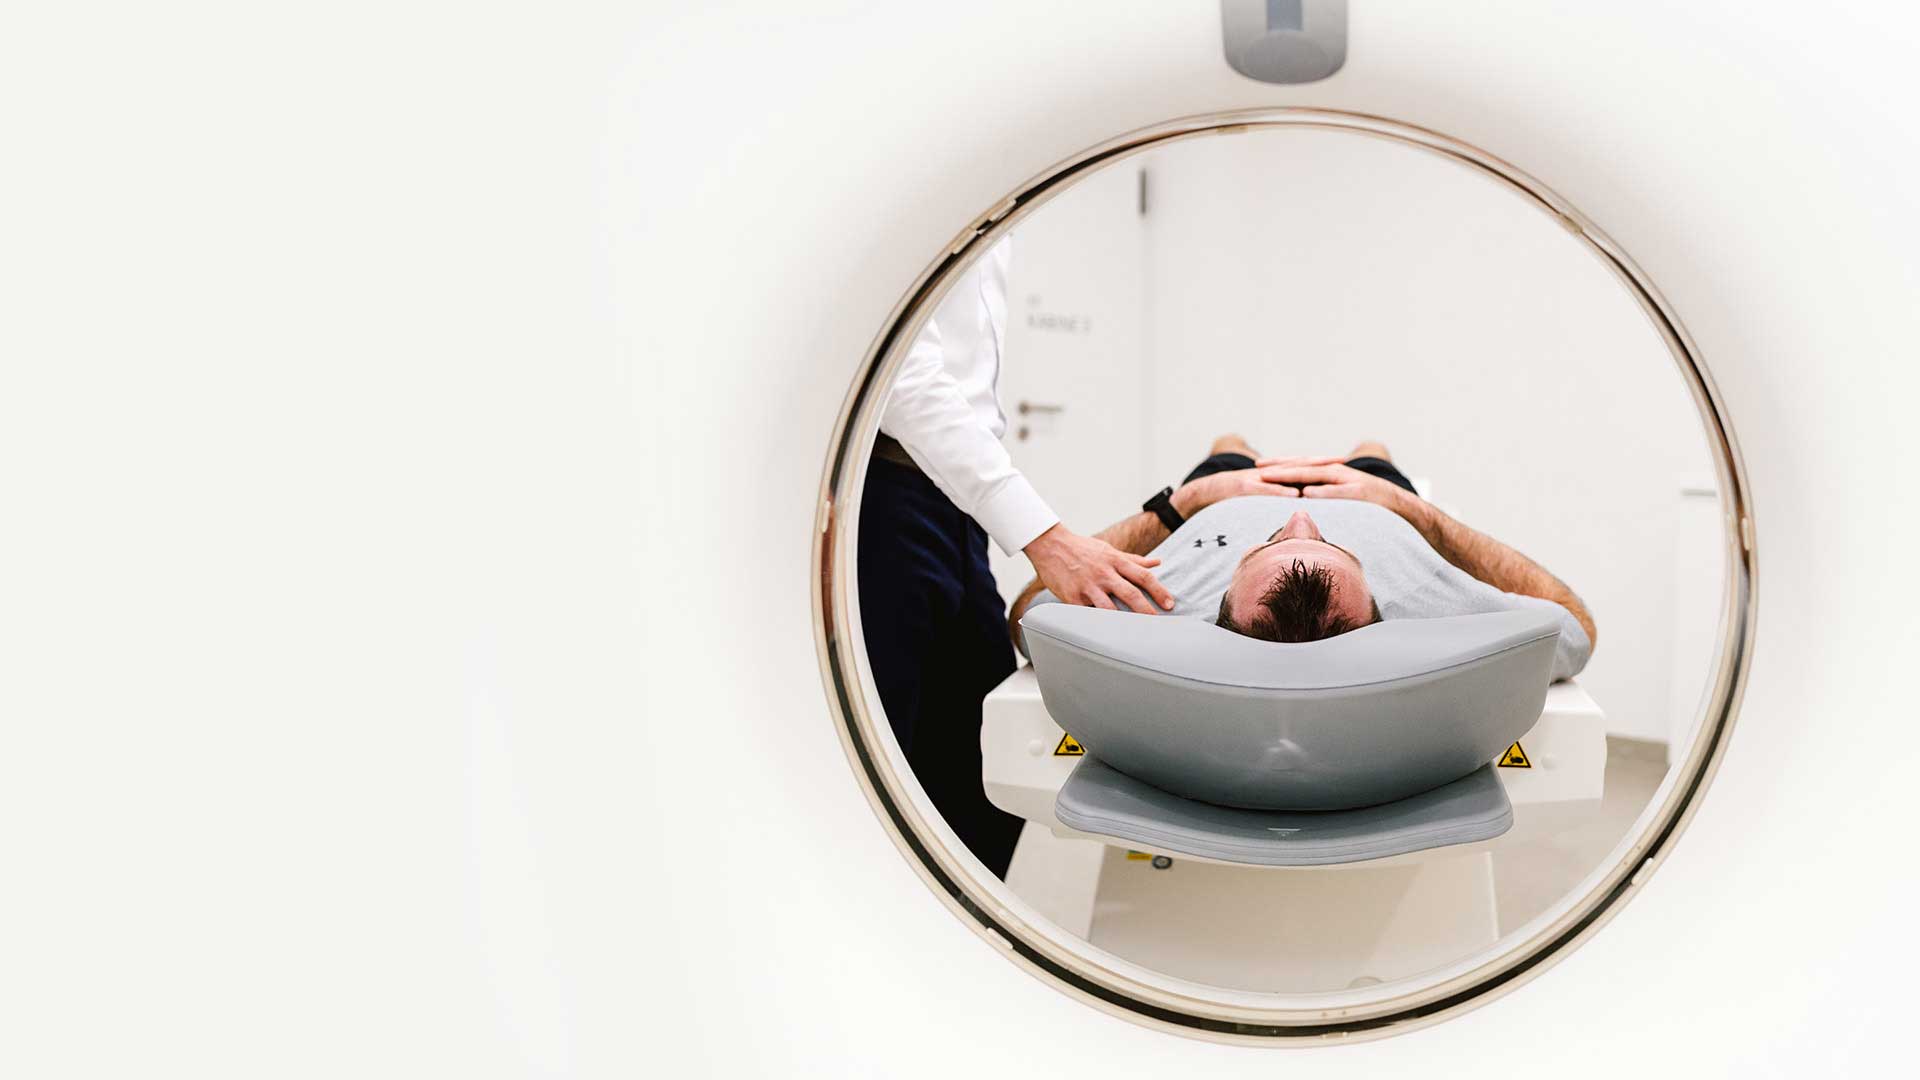 Ganzkörper-MRT zur Vorsorgediagnostik in der Radiologie Heinrichsallee, Aachen